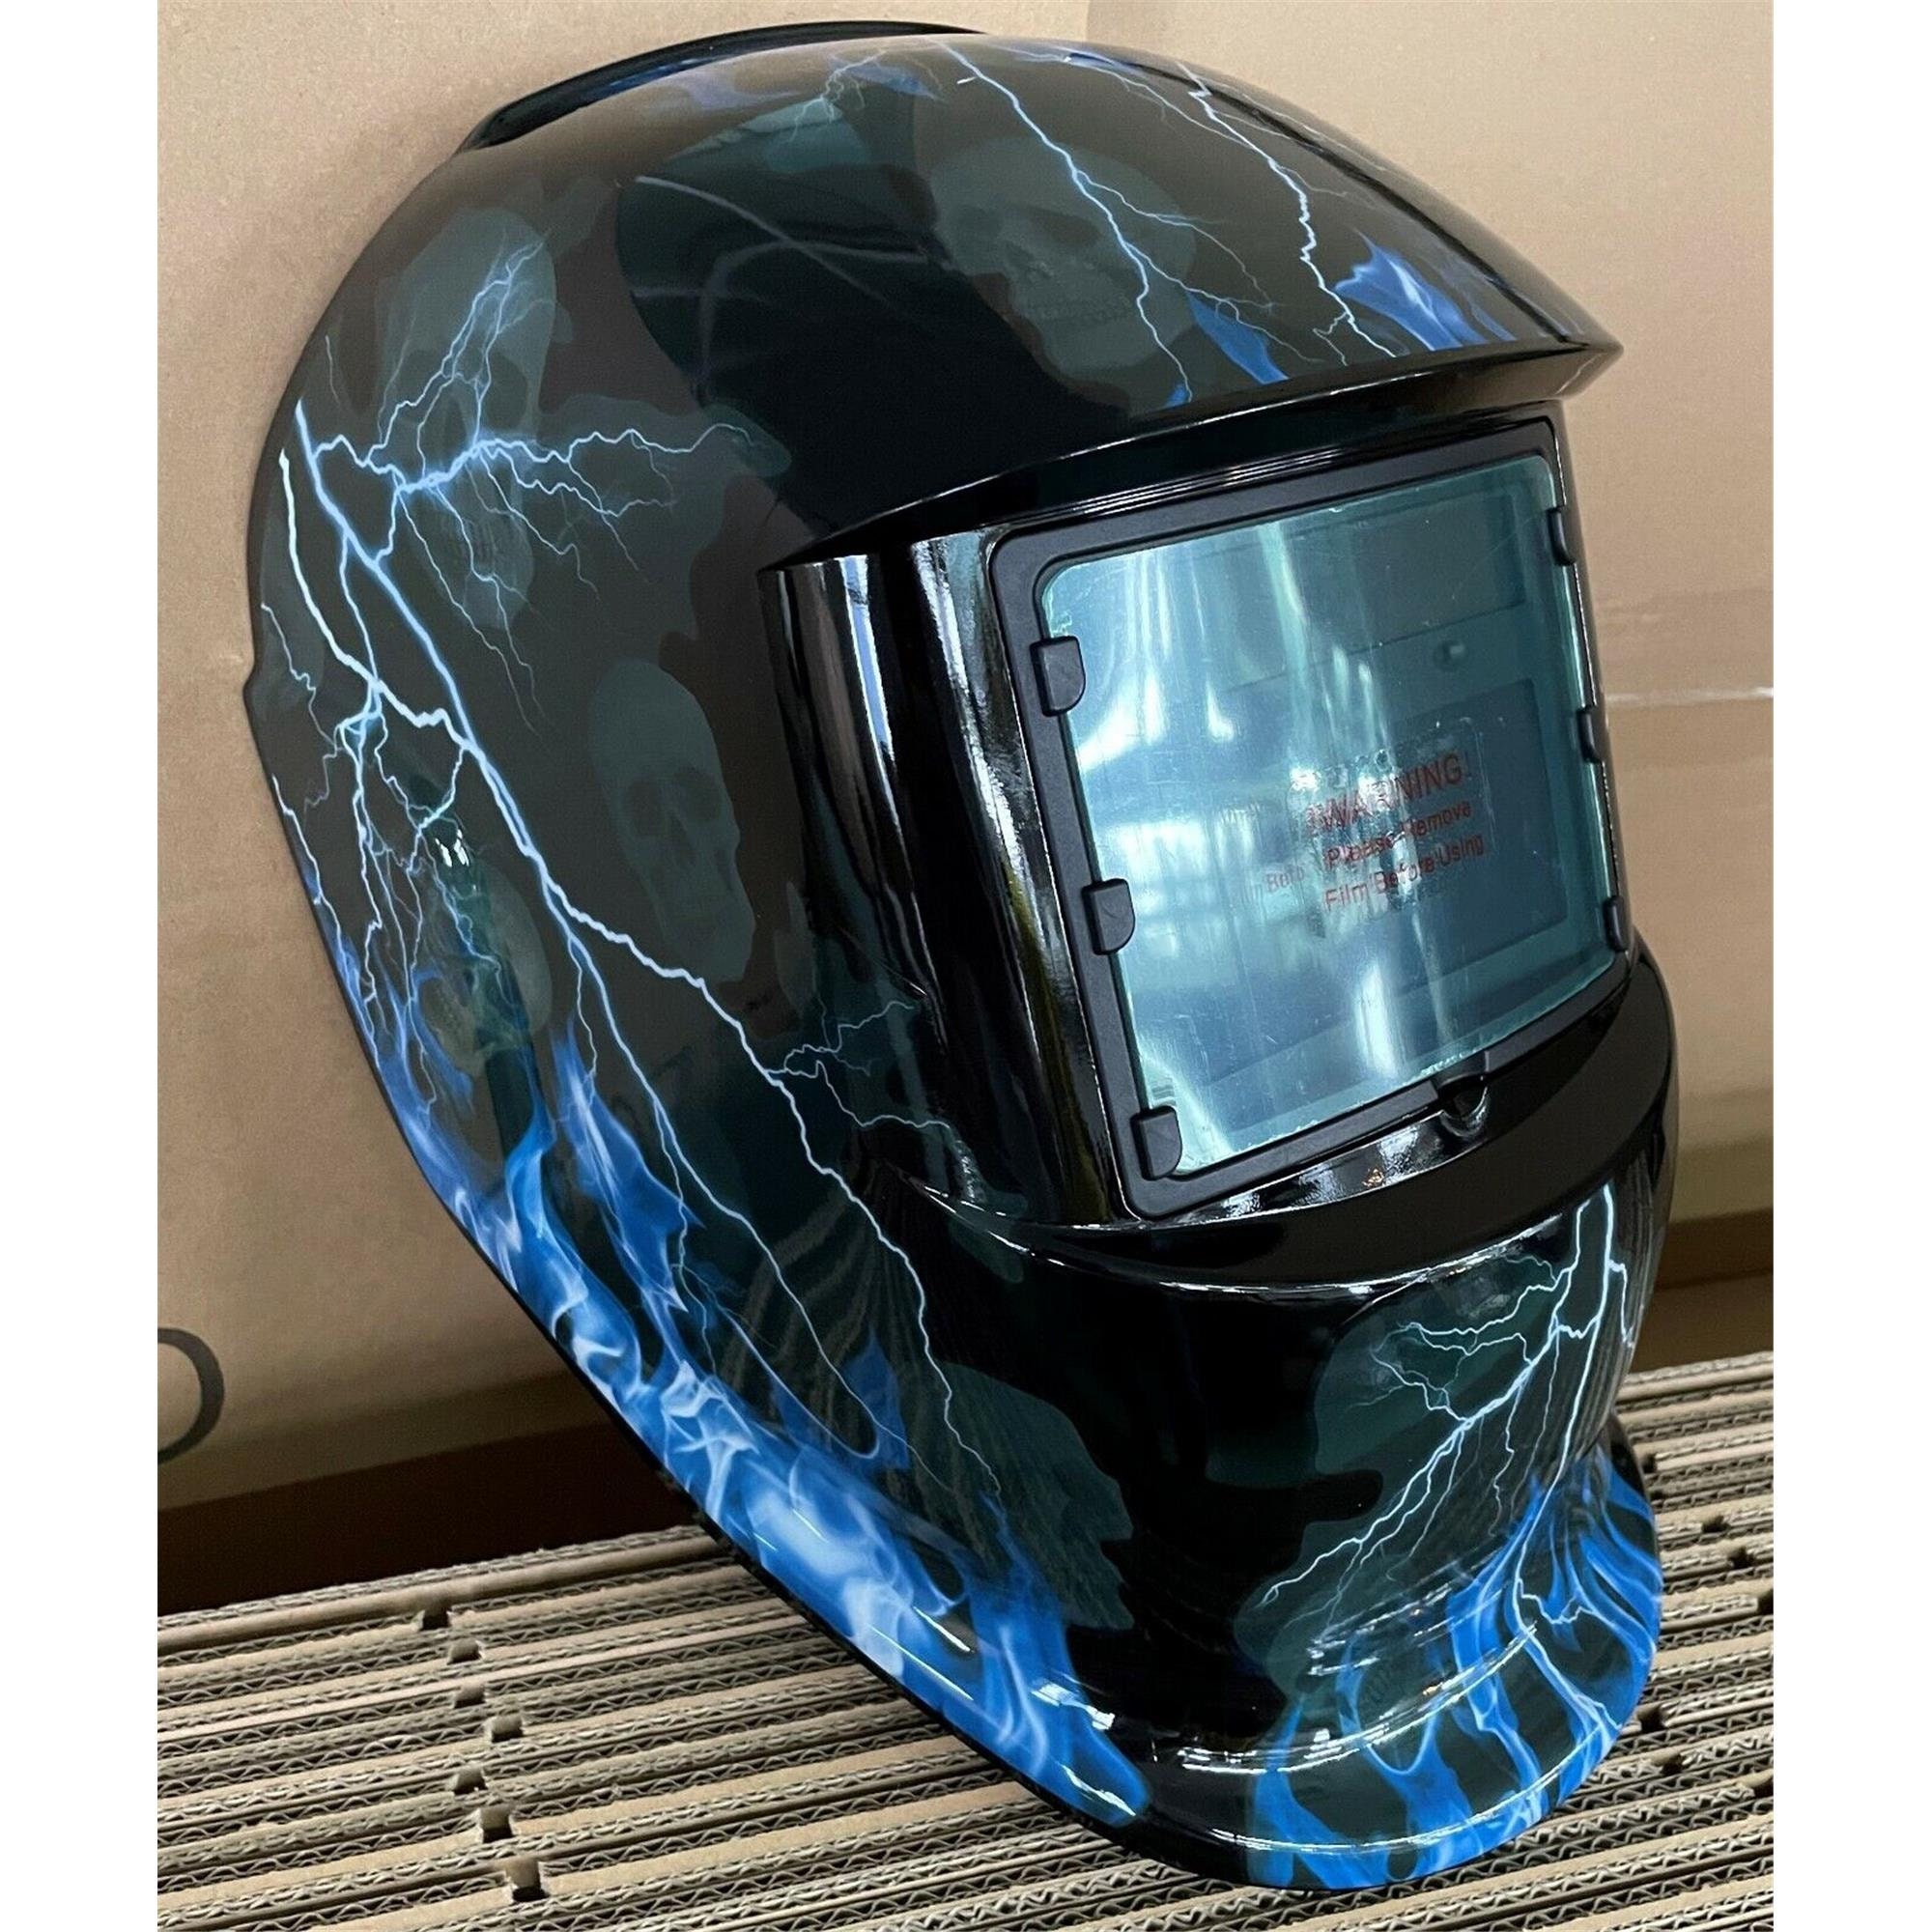 louis vuitton welding helmet